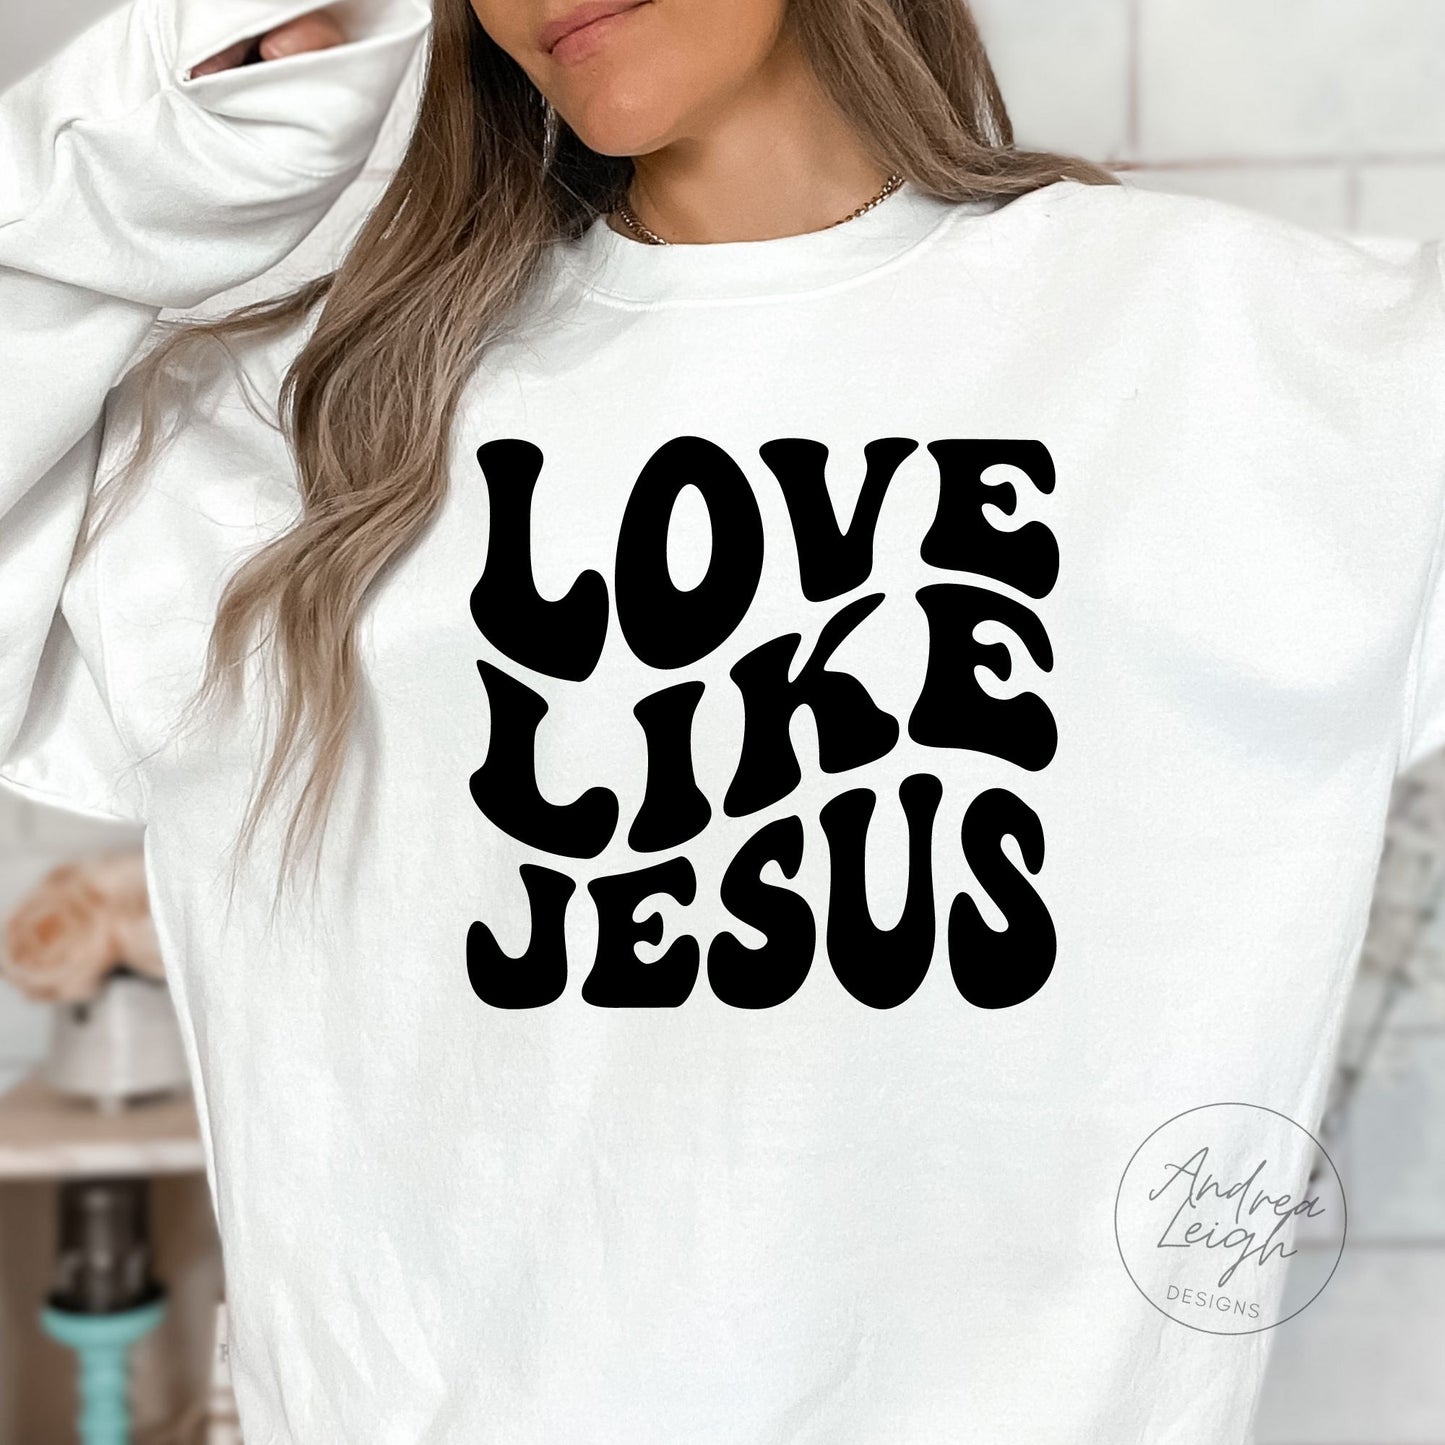 PREORDER- Love Like Jesus Sweatshirt